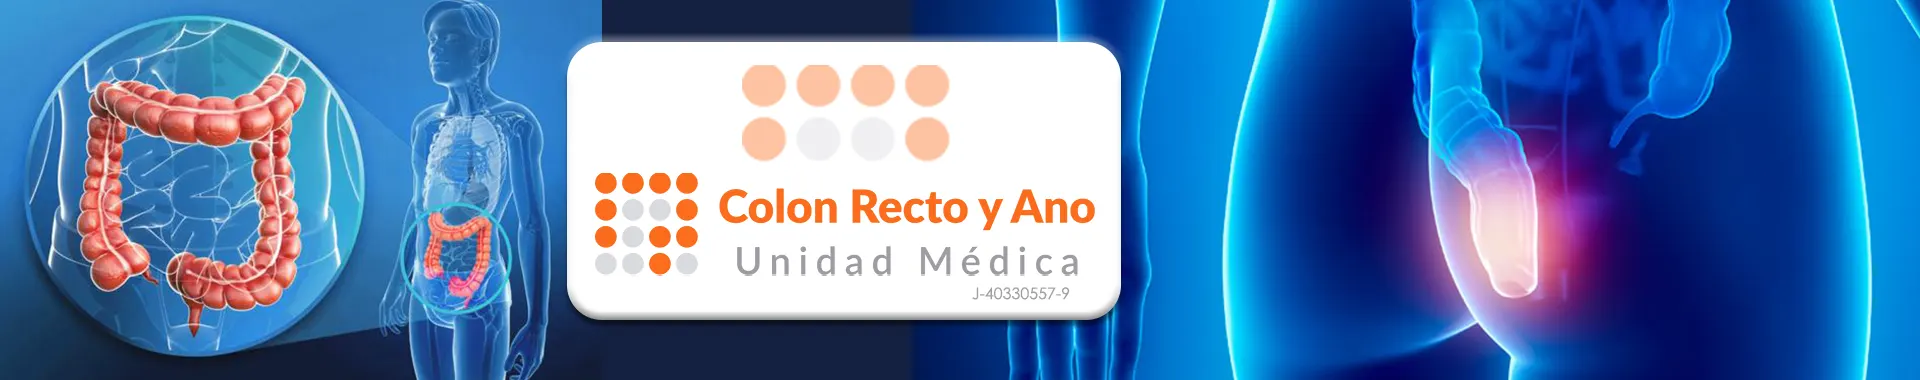 Imagen 1 del perfil de Colon Recto y Ano Unidad Médica